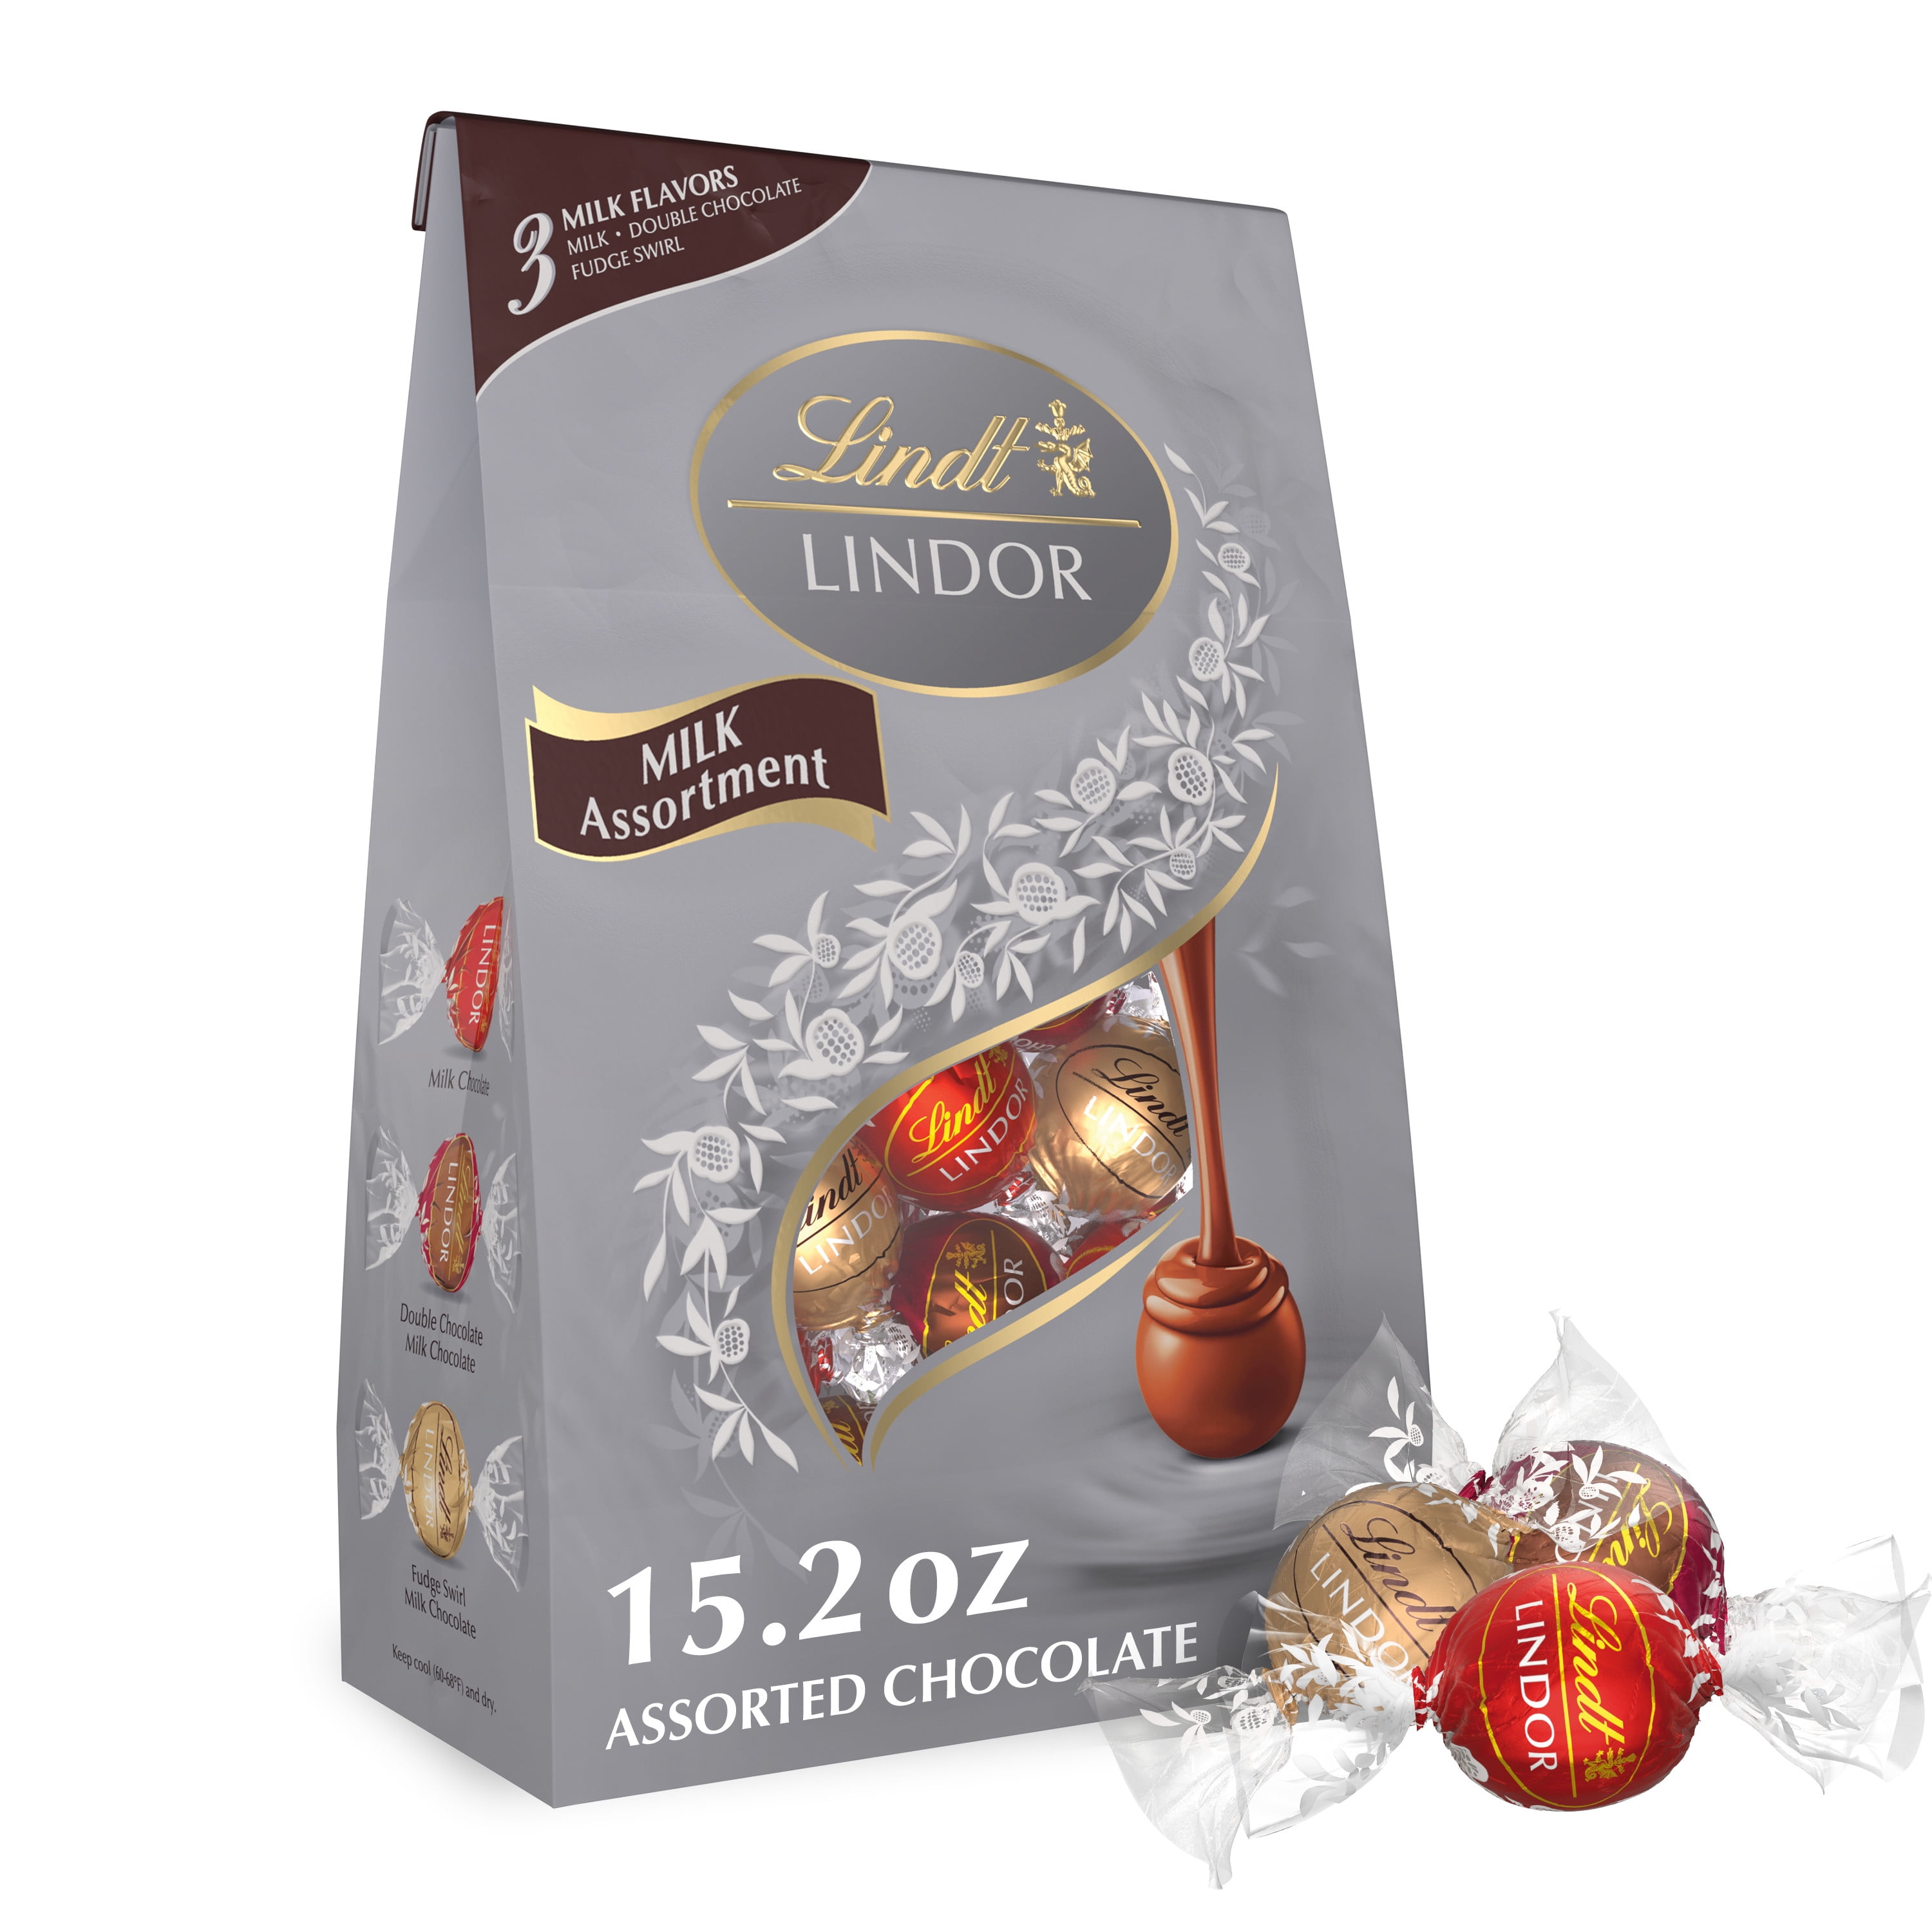 Lindt Lindor Milk Assorted Chocolate Candy Truffles, 15.2 oz. Bag